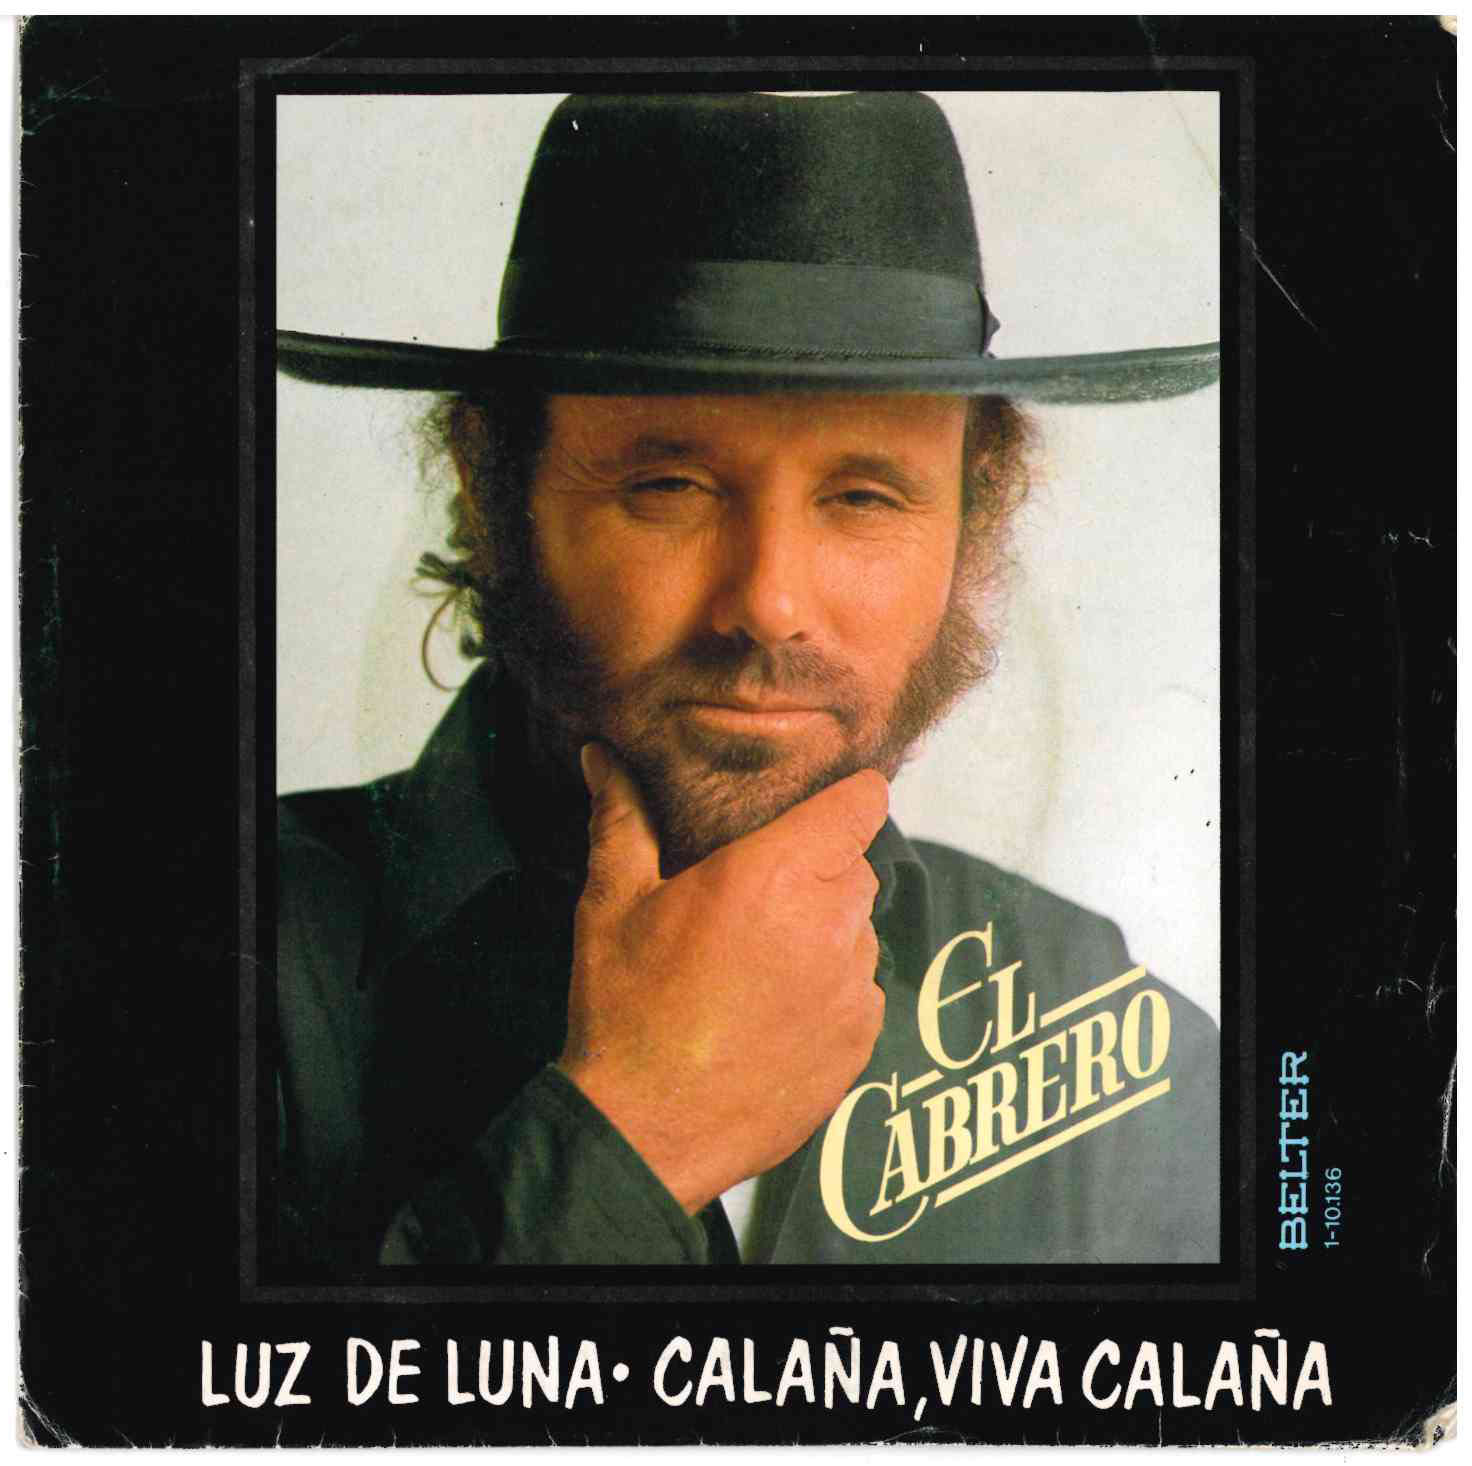 El Cabrero. Luz de luna / Calaña, viva Calaña. Belter 1980 (1-10. 136-A) Single 45 RPM